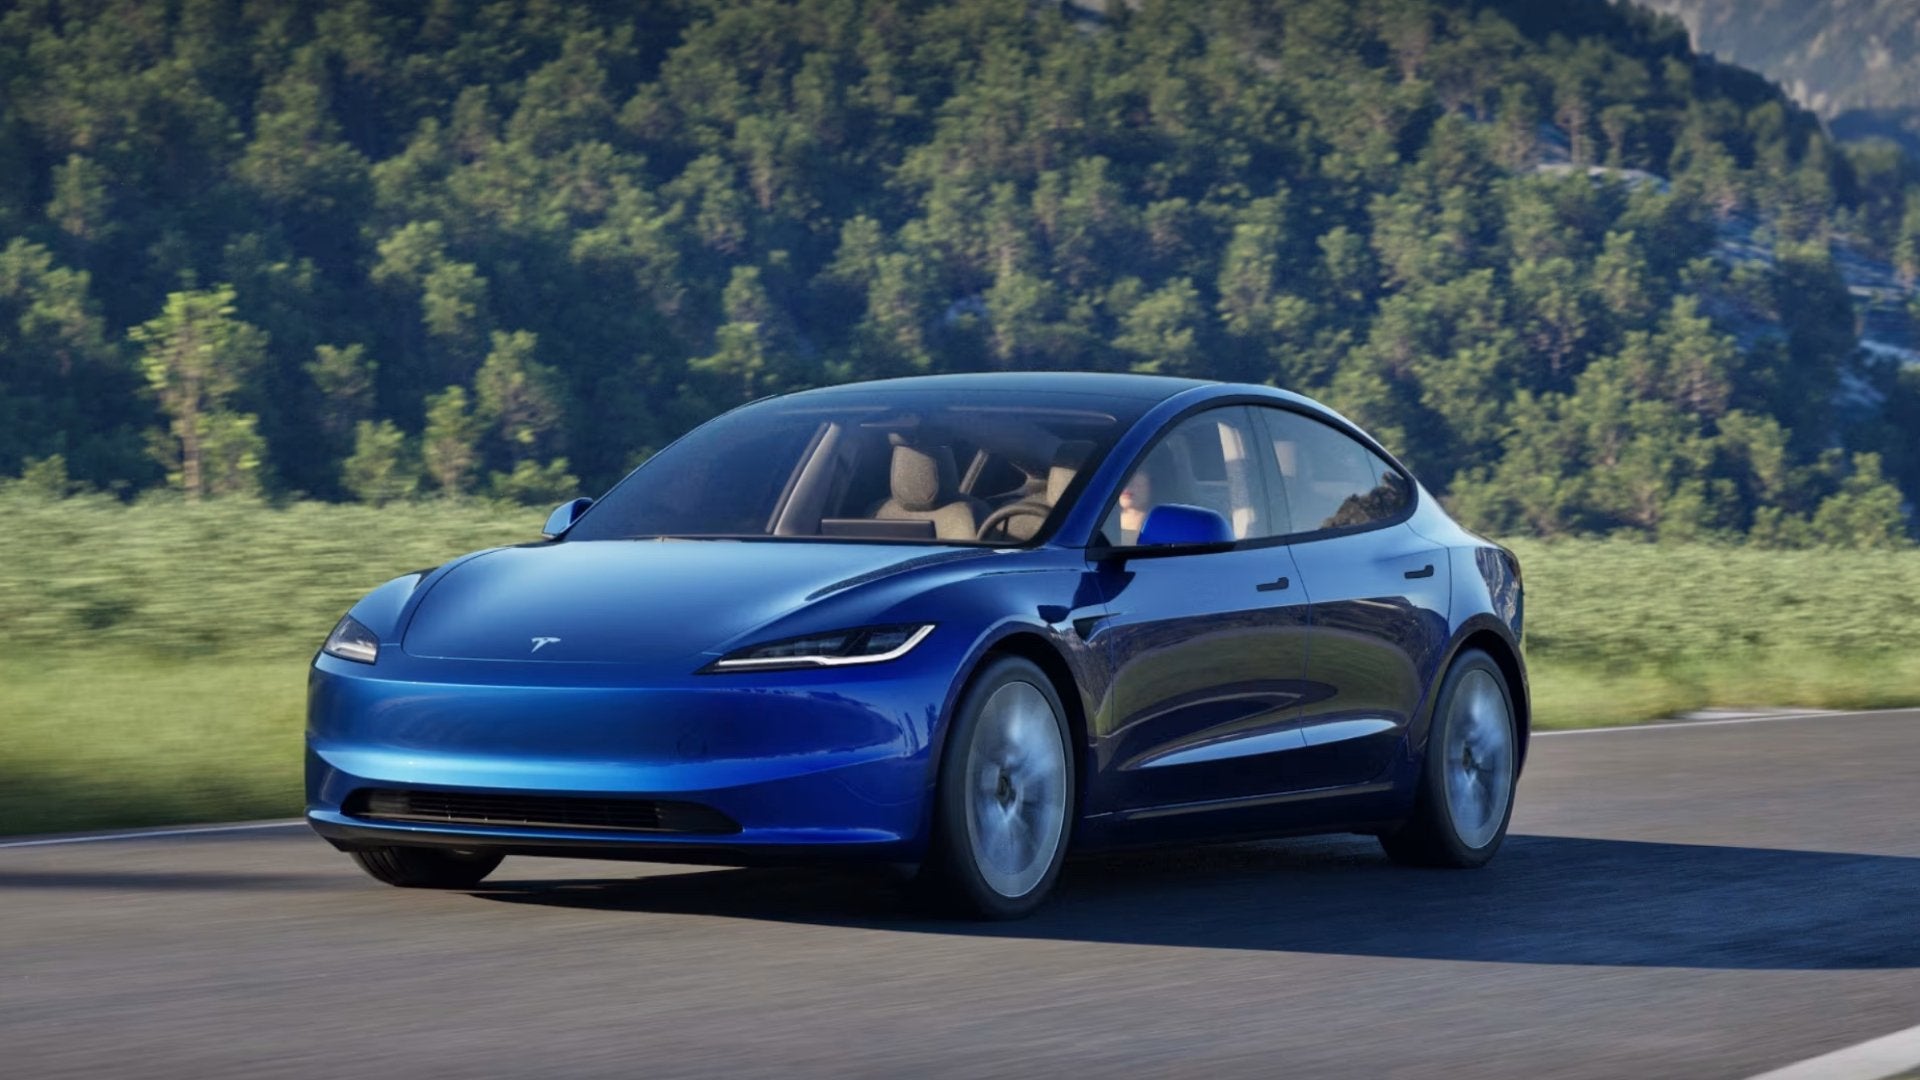 ADAC Test: Tesla Model 3 "Highland" bringt Verbesserungen und Kontroversen - Shop4Tesla